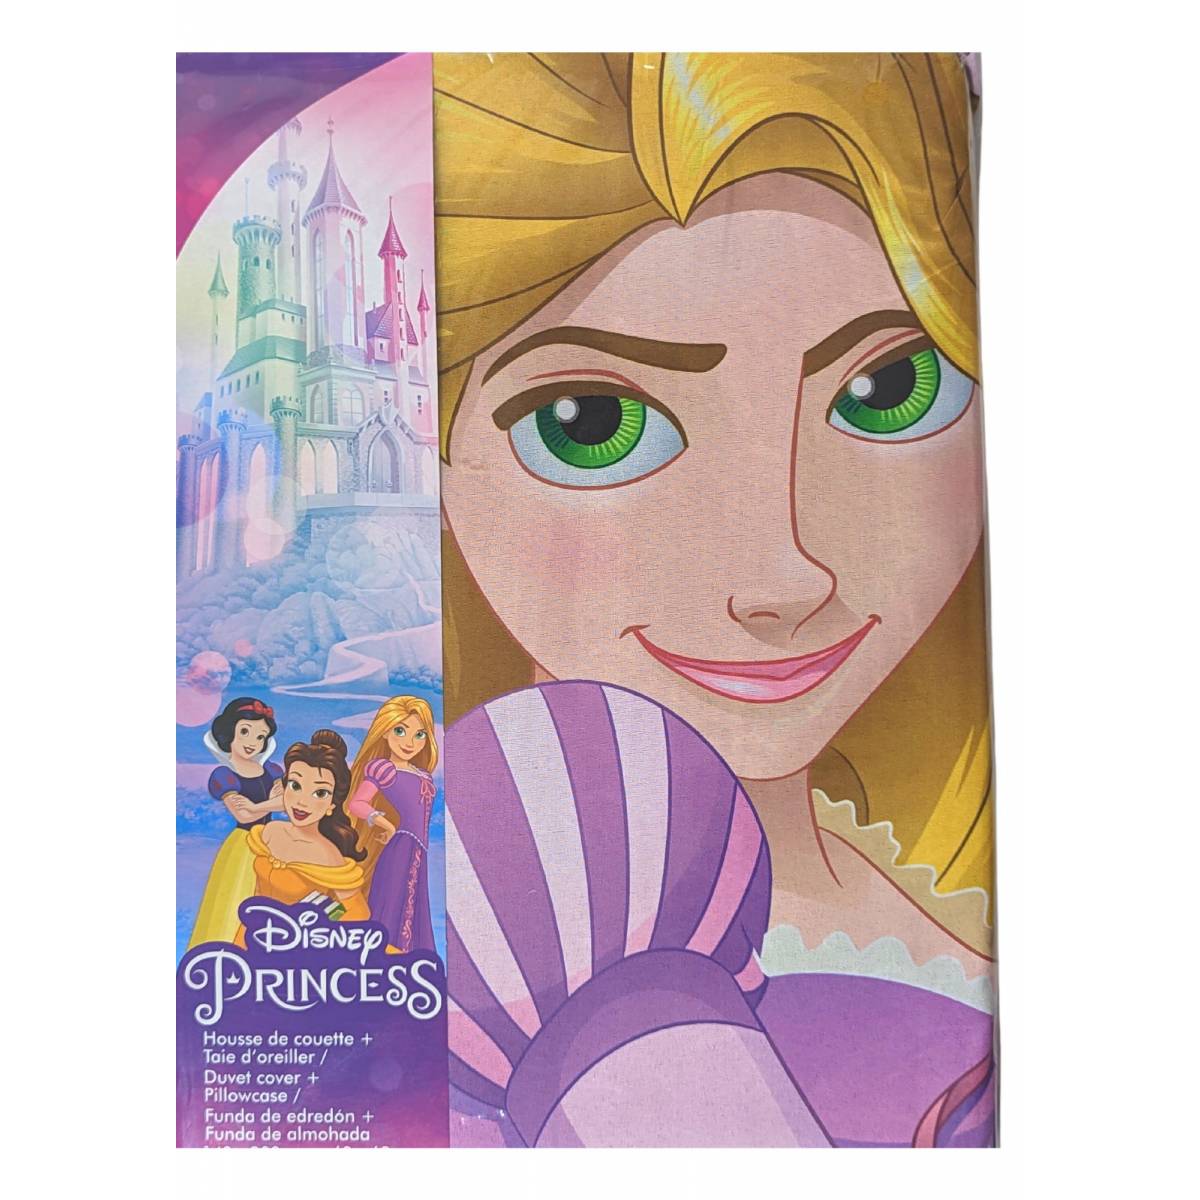 3 Housses de couette princesse disney +plaid - Disney